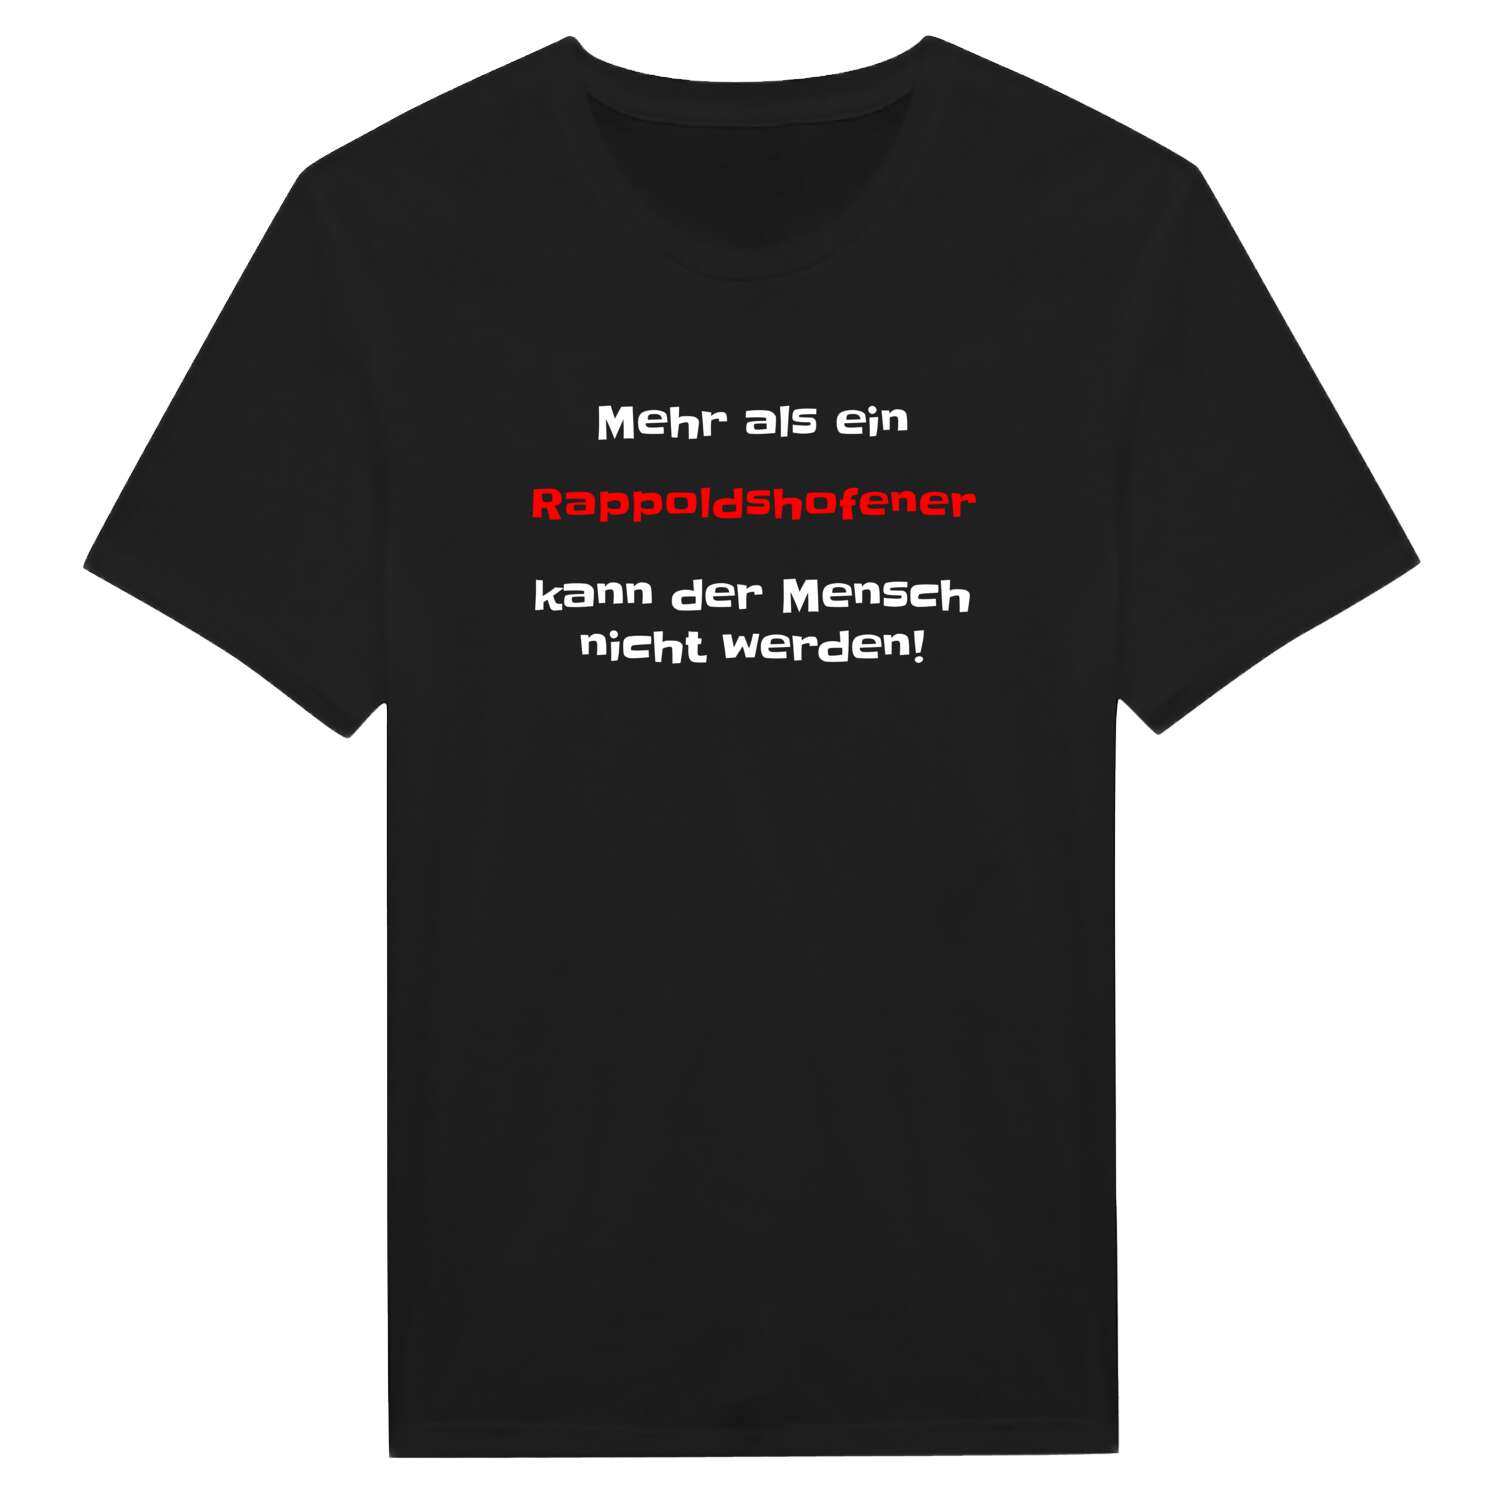 Rappoldshofen T-Shirt »Mehr als ein«